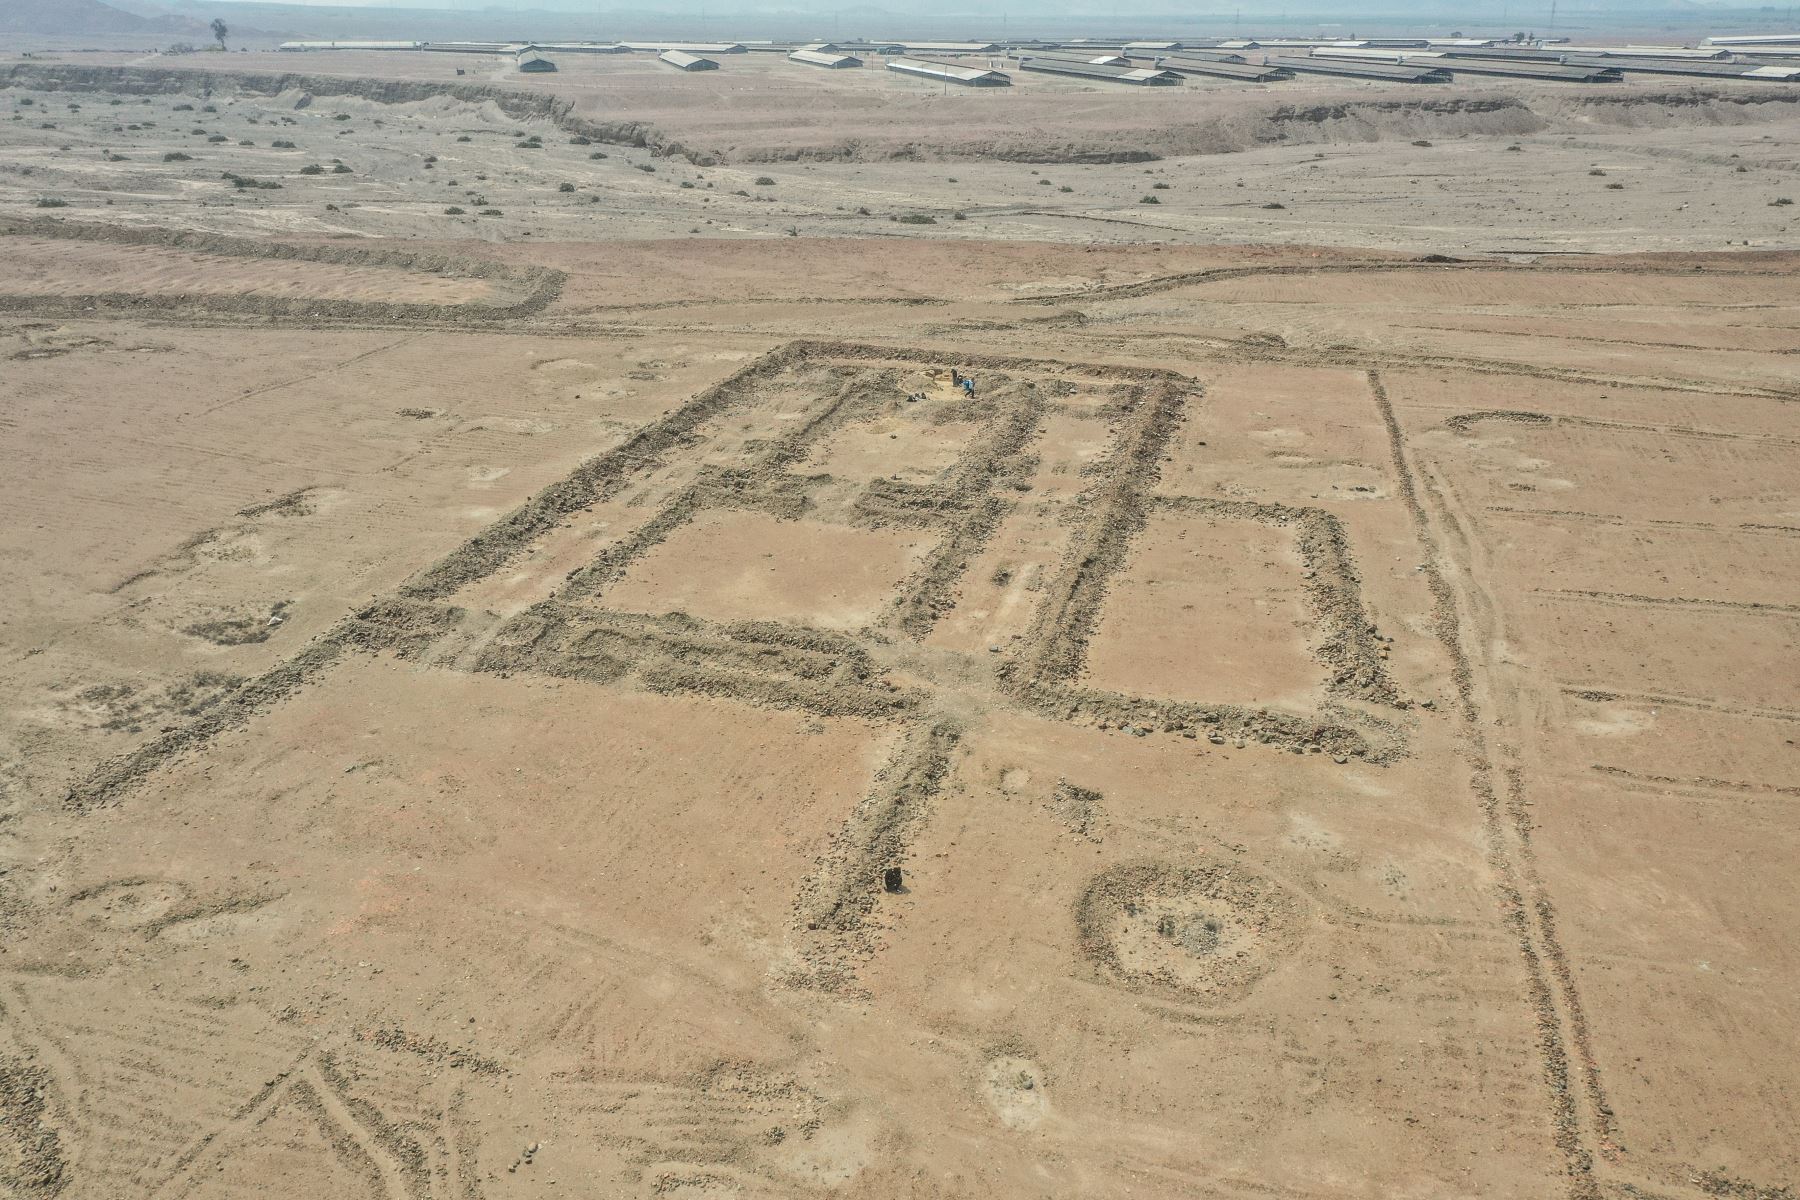 El sitio arqueológico fue descubierto en la quebrada El Oso, en el marco del Programa Arqueológico Chicama y demostraría la orientación agrícola de la cultura Chimú. Foto: Programa Arqueológico Chicama - UNMSM - IPEA